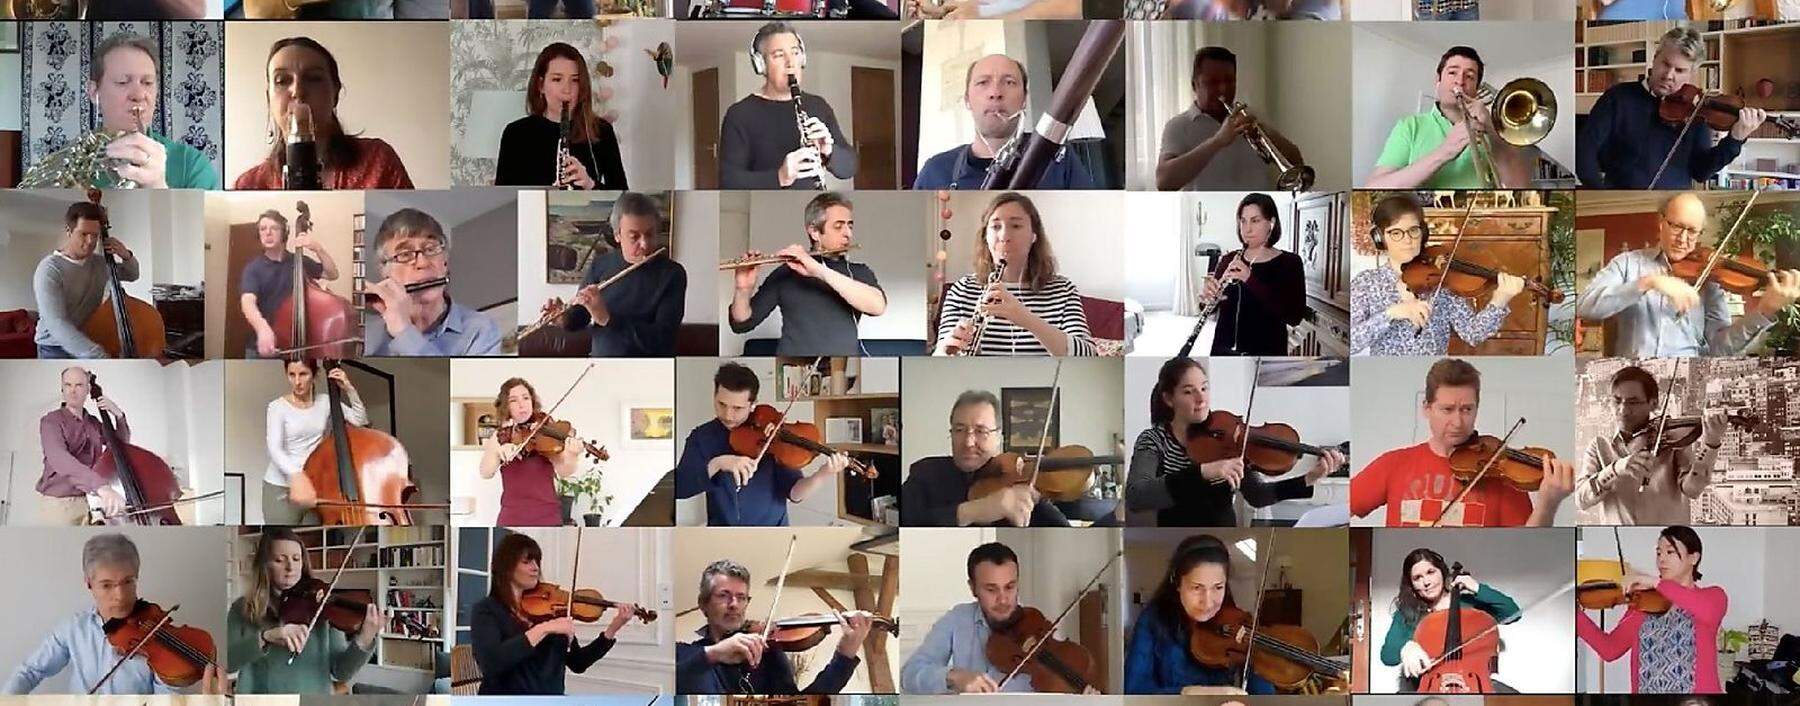 Selbst das französische Nationalorchester kann über Videokonferenz-Anbieter wie Zoom ein wenig weiterarbeiten. 